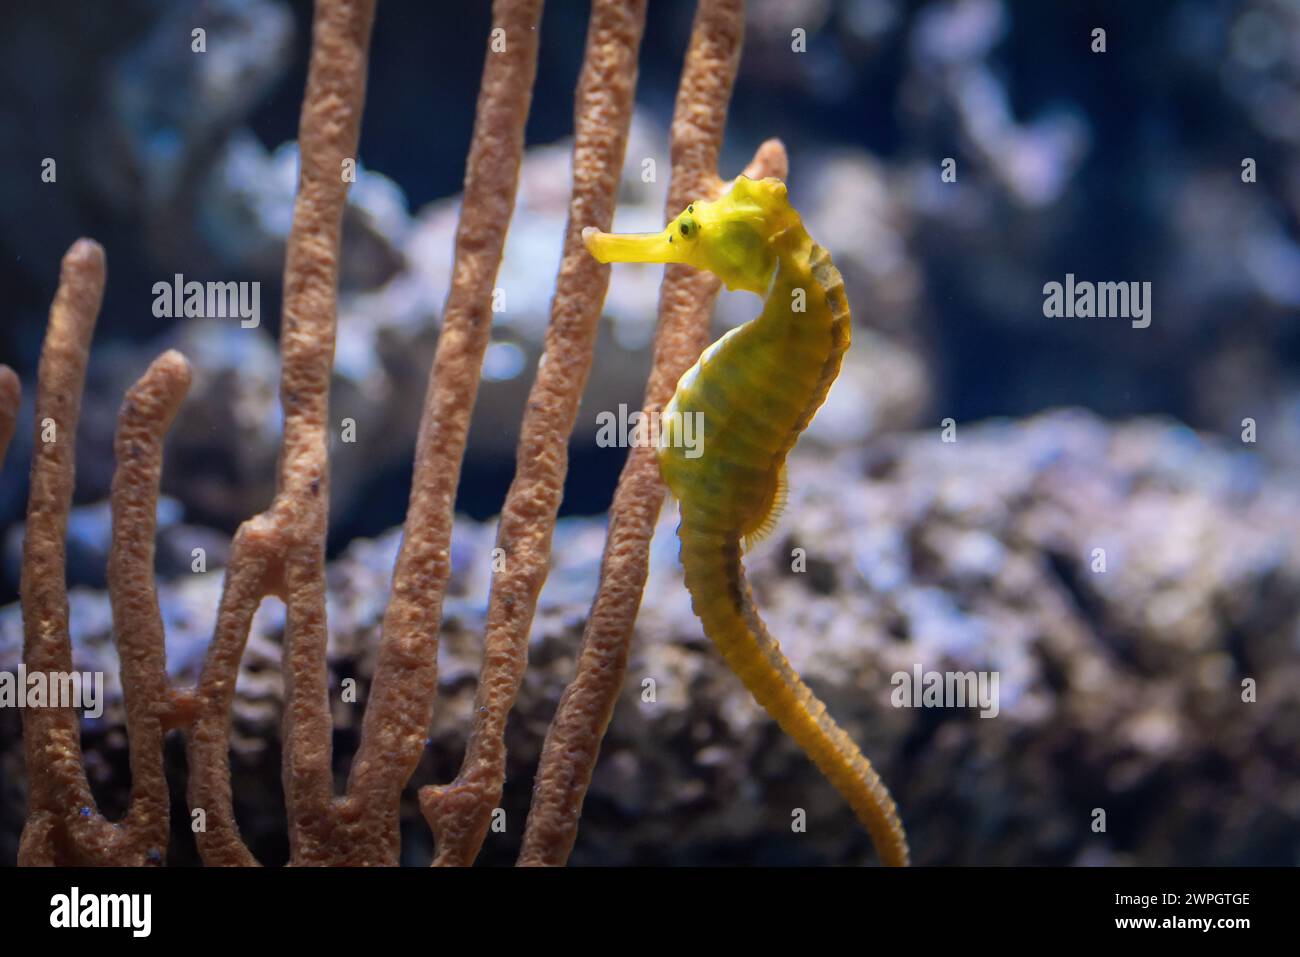 Cavalluccio marino giallo sottile (Hippocampus reidi) o cavalluccio marino Longsnout Foto Stock